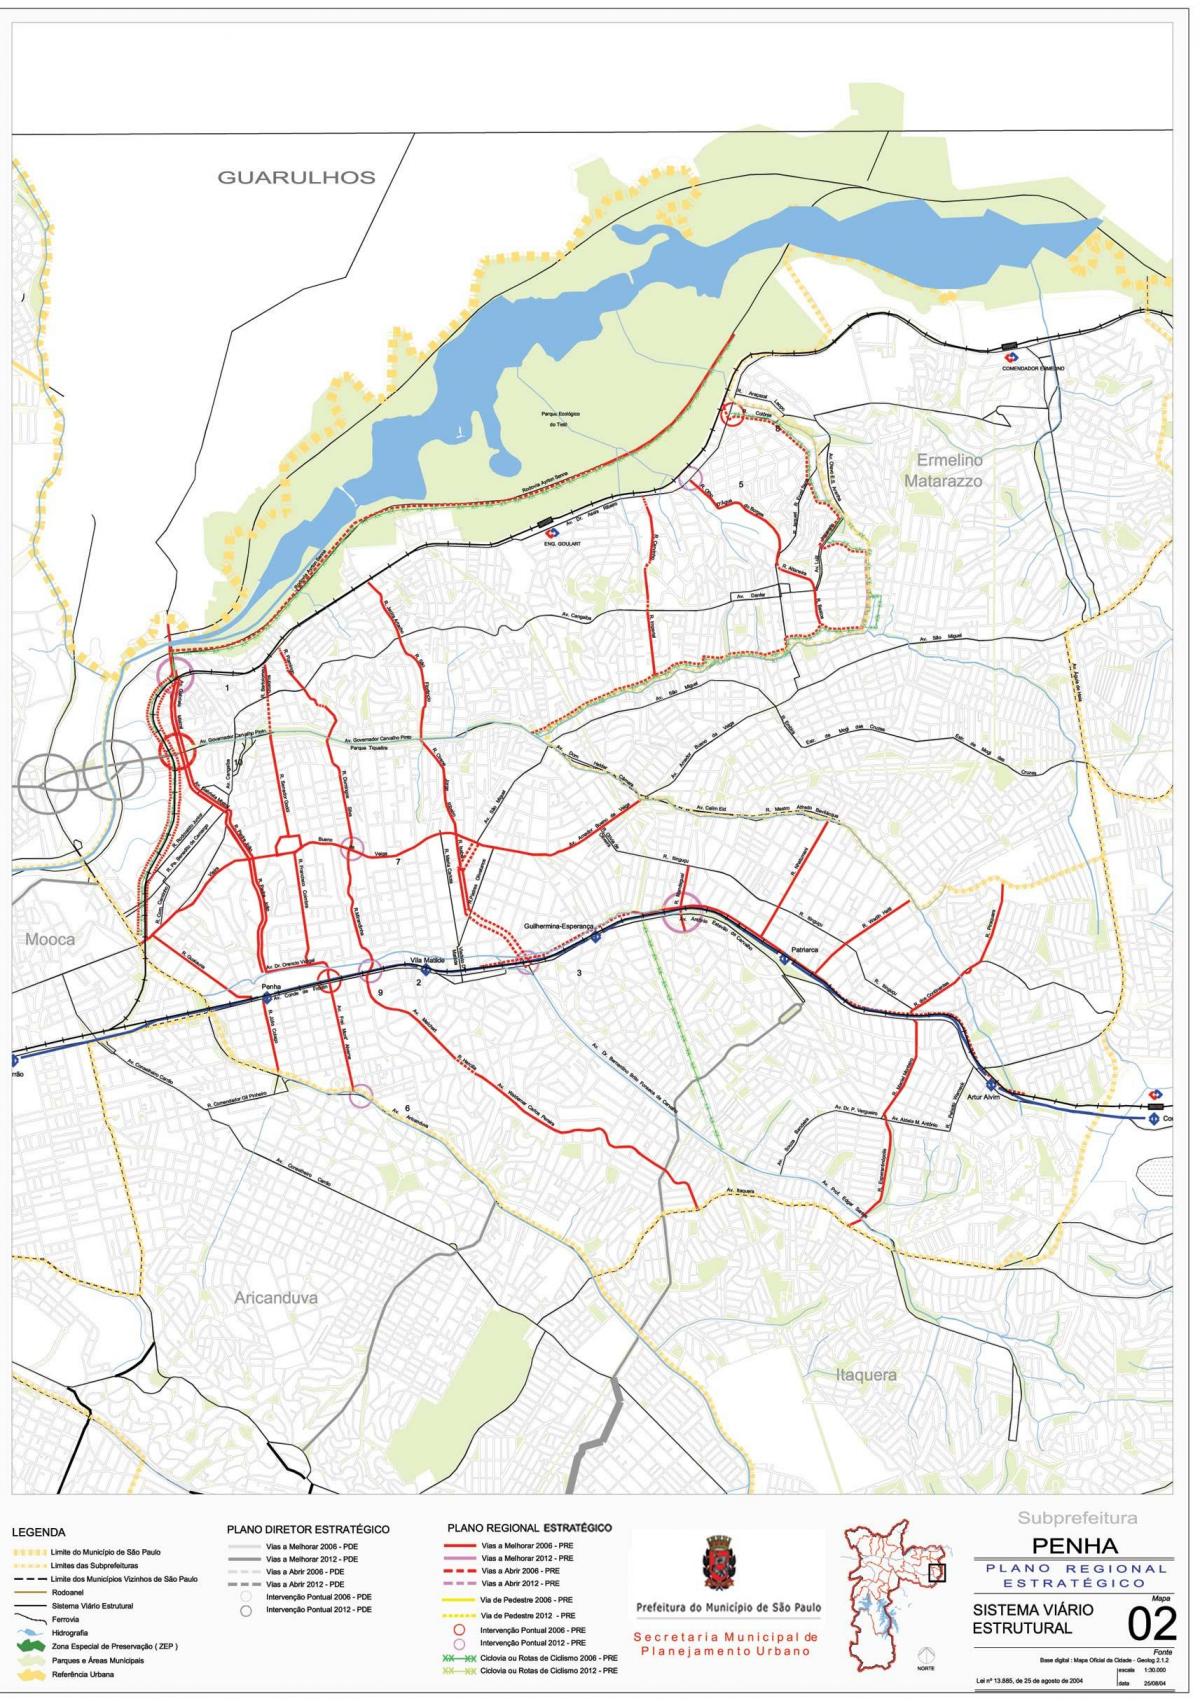 Map of Penha São Paulo - Roads